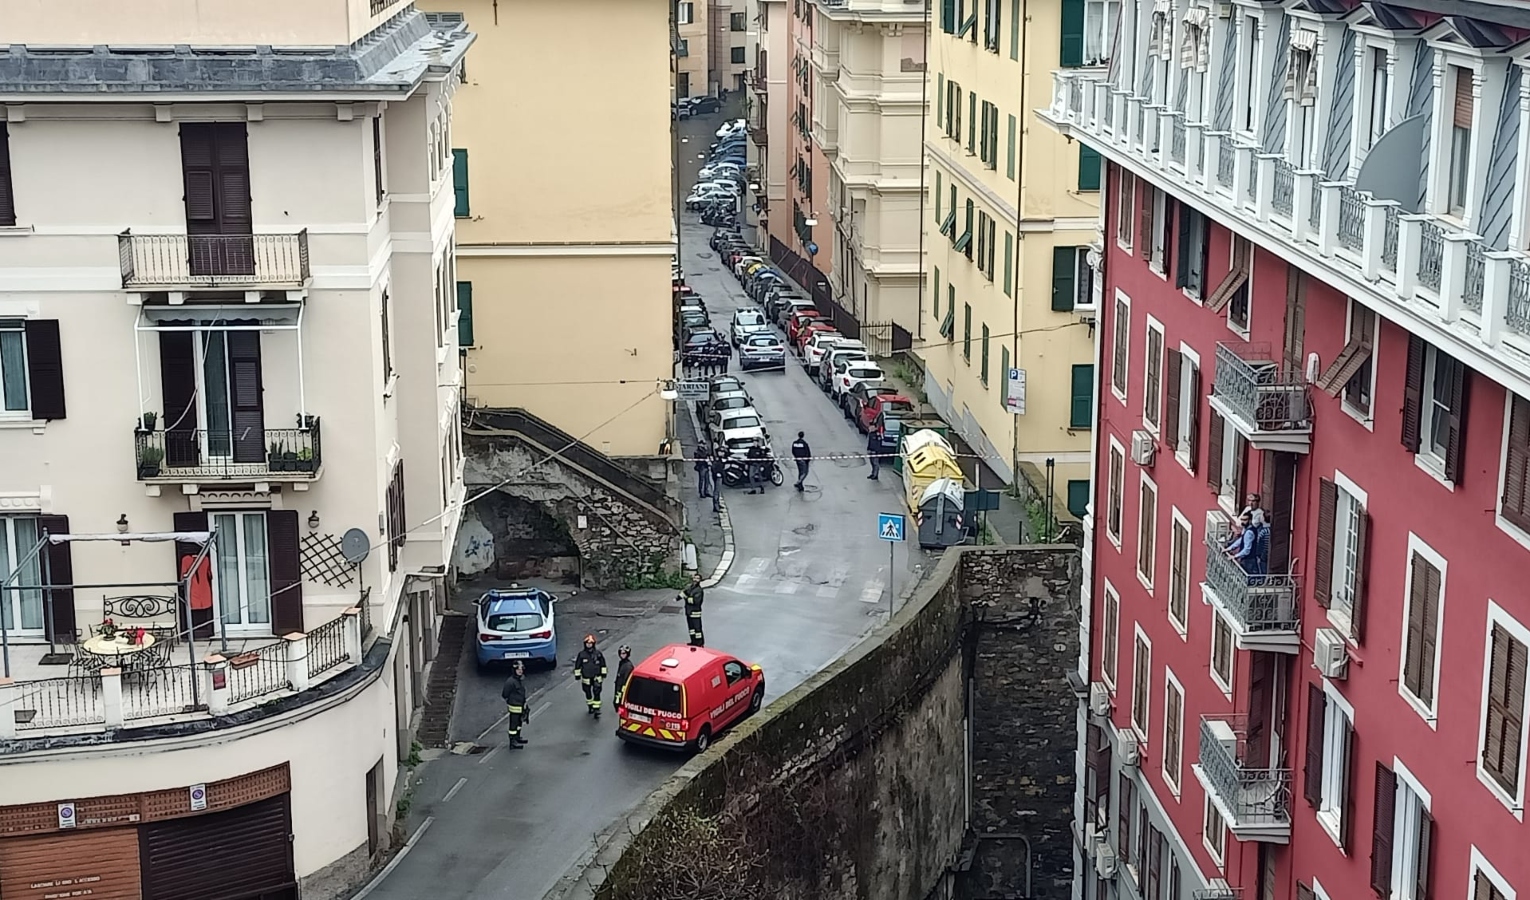 Ordigno bellico in un cassonetto a Genova, riaperta via Banderali